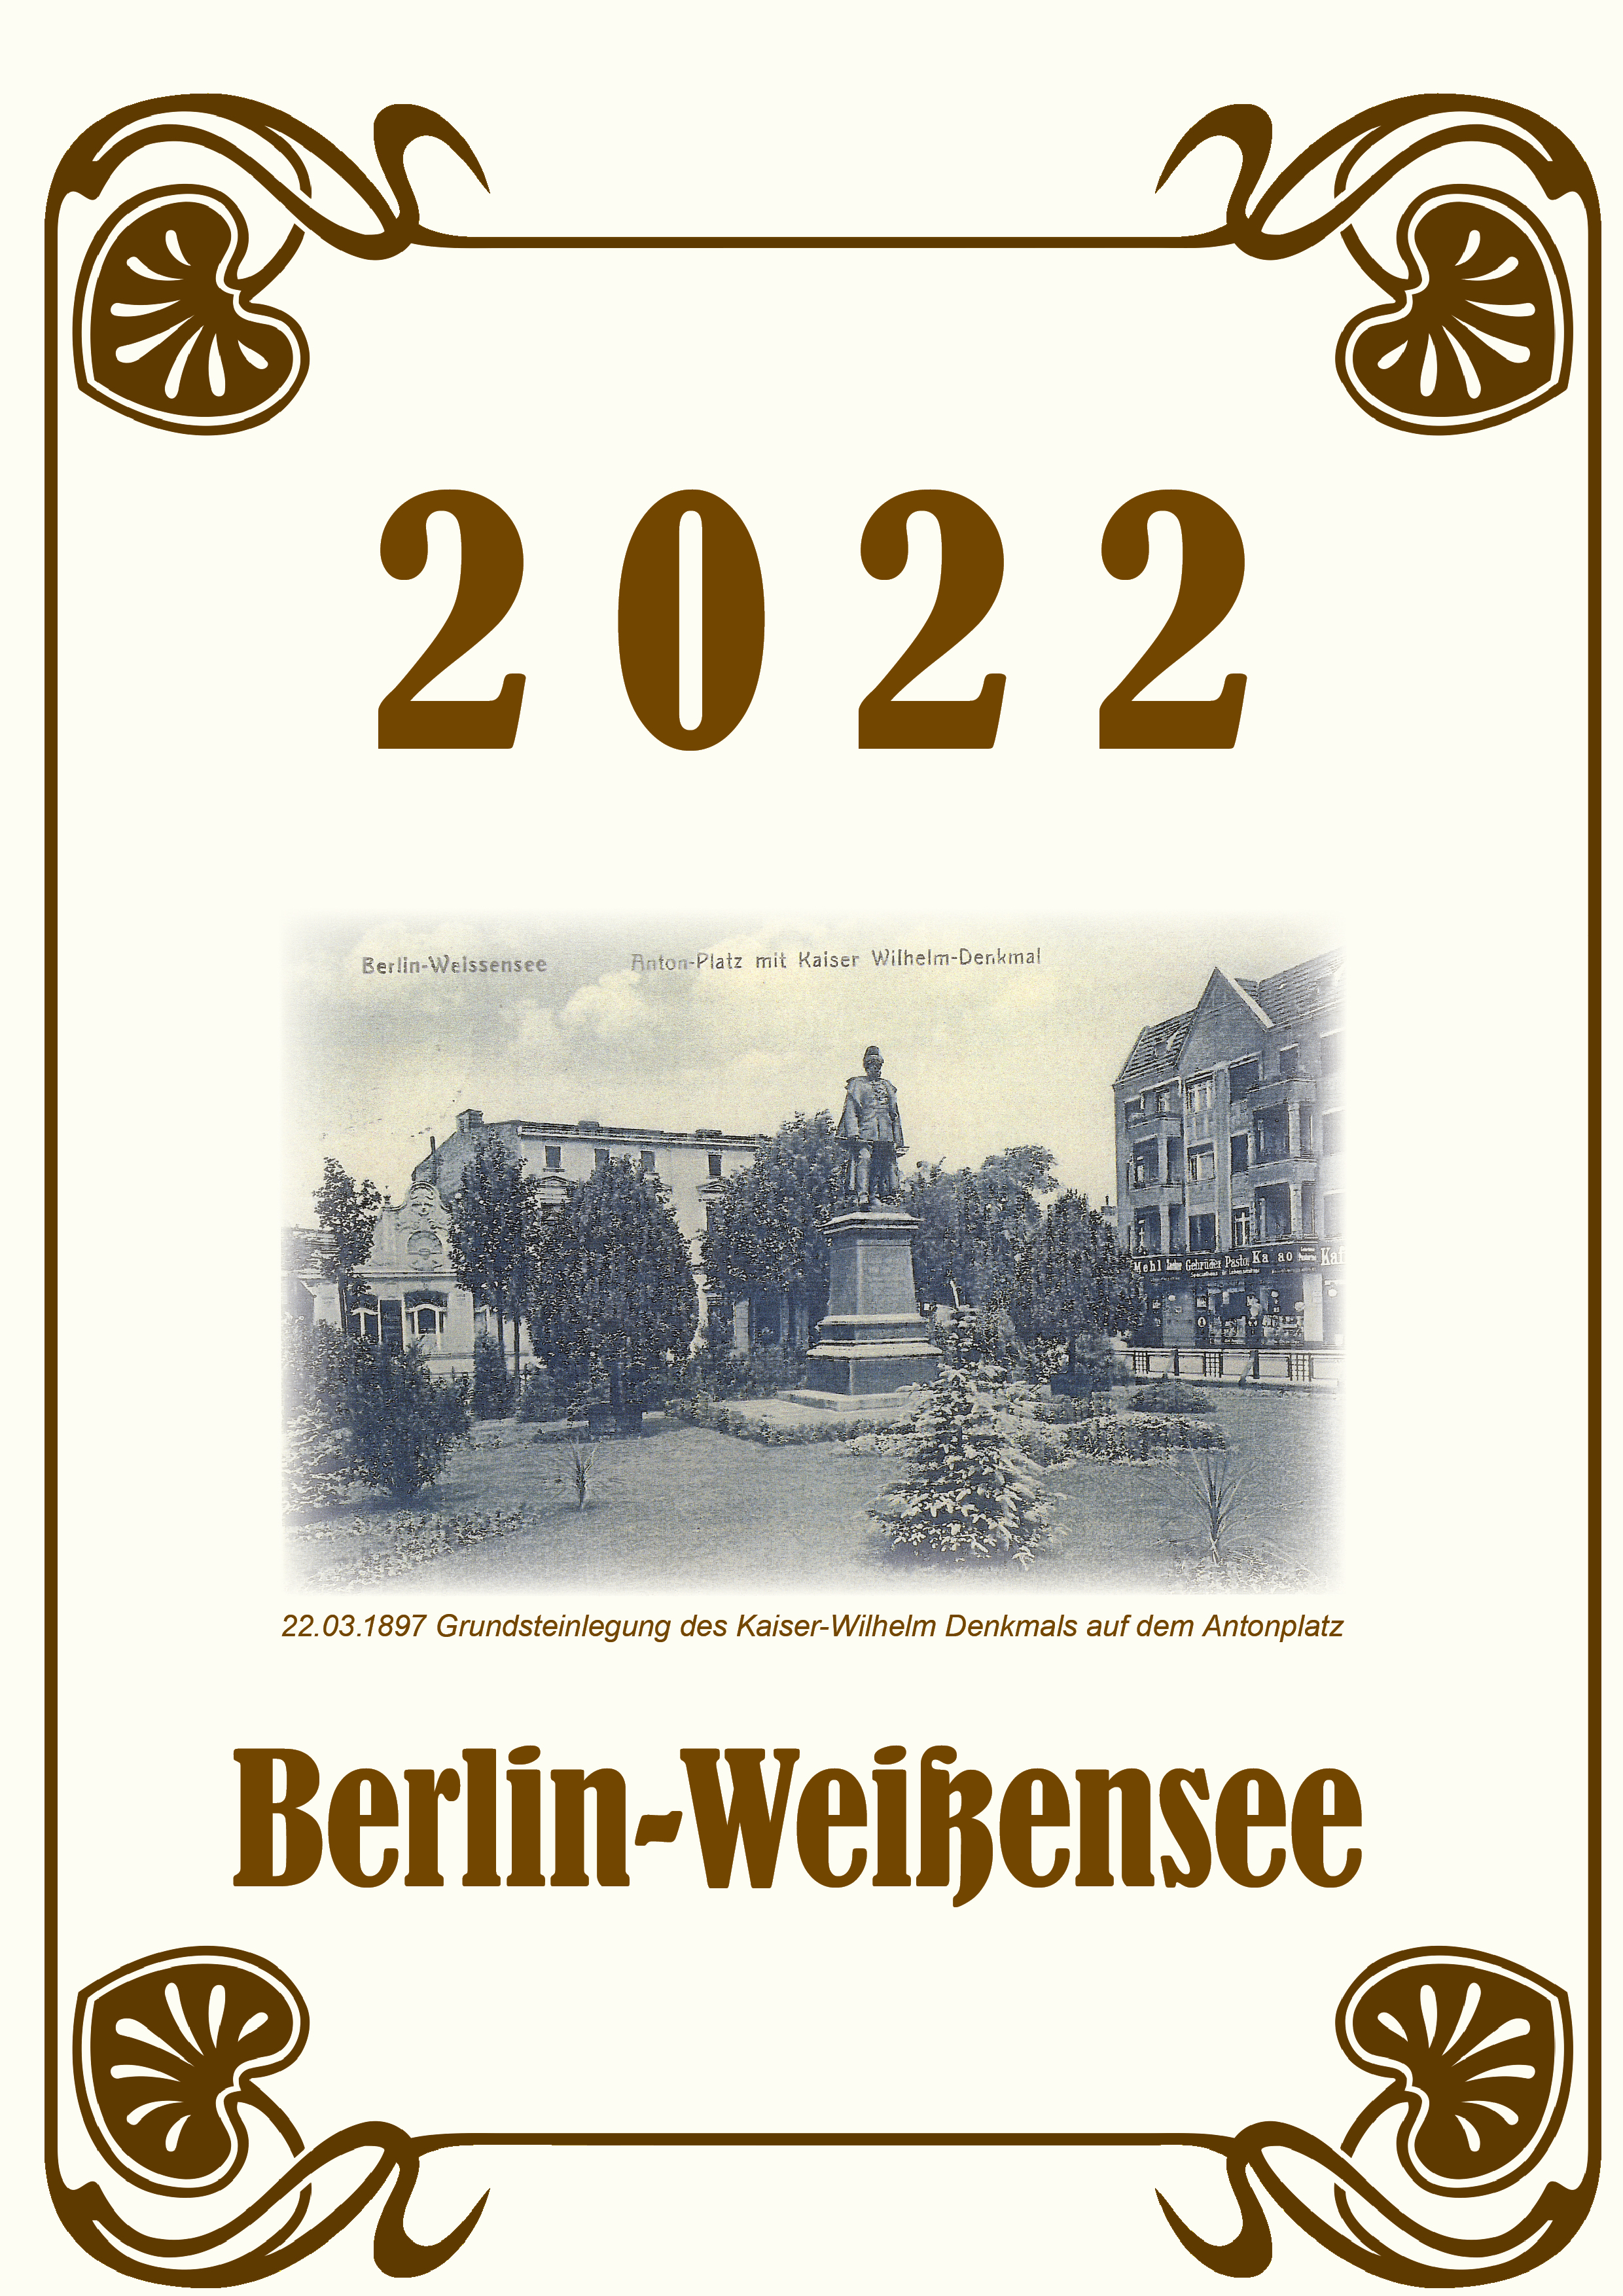 Weißensee-Kalender 2022